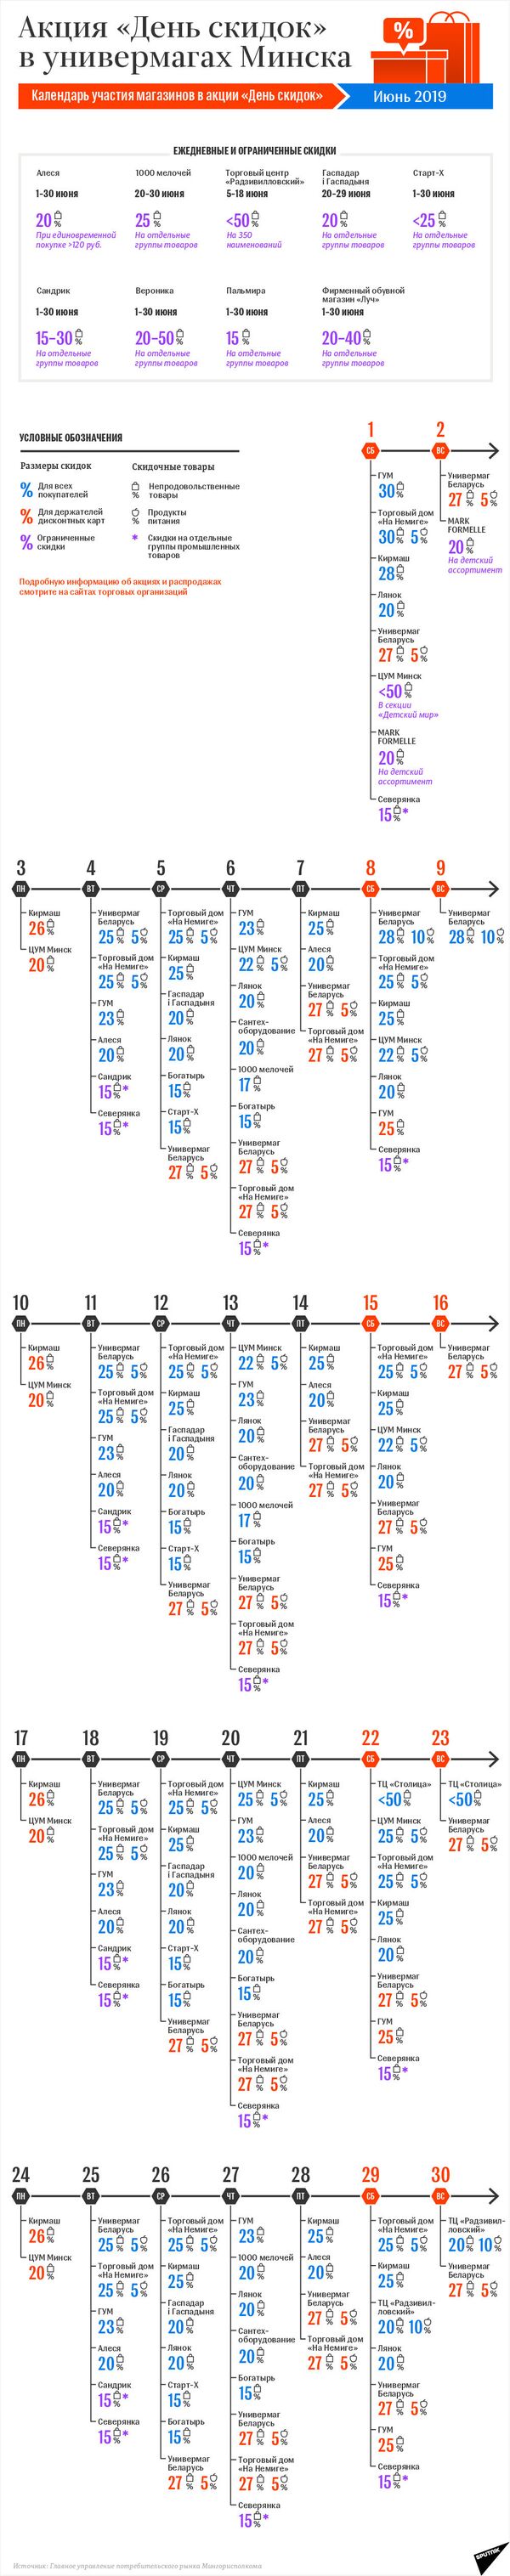 Календарь акции День скидок в Минске: июнь-2019 | Инфографика sputnik.by - Sputnik Беларусь